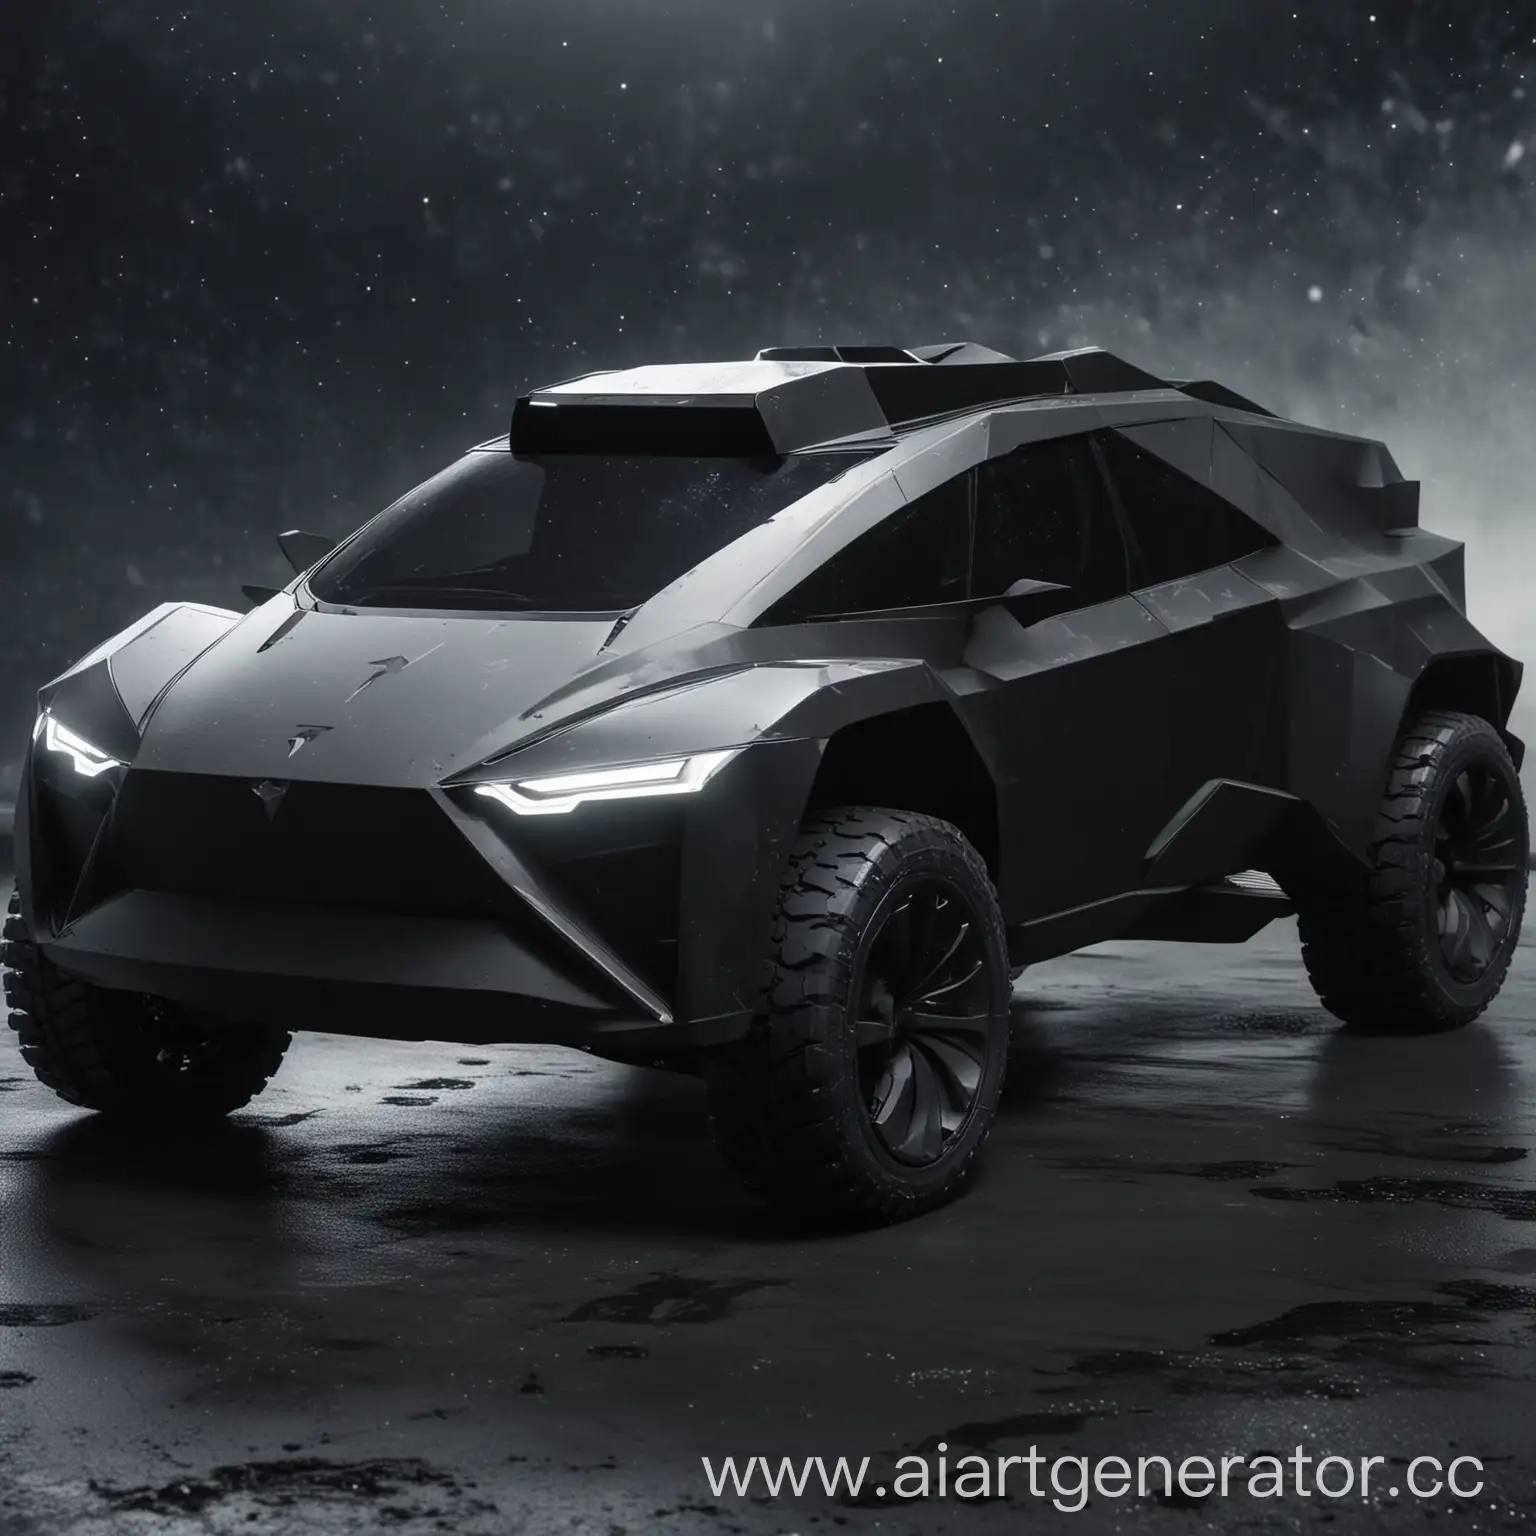 Futuristic-Batman-Driving-Tesla-Cybertruck-in-Space